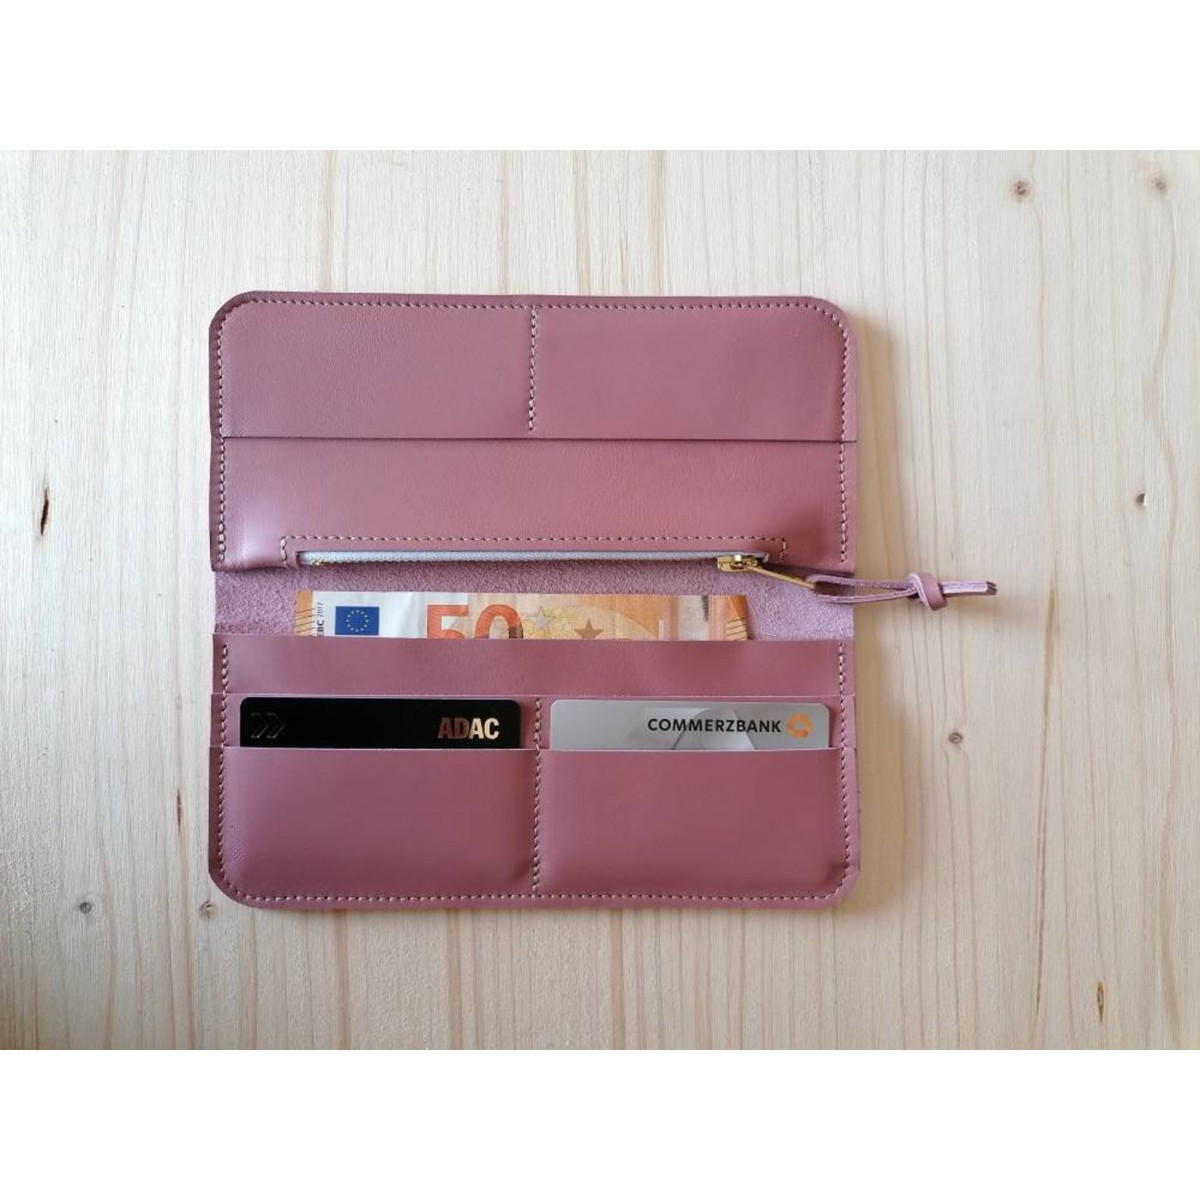 BSAITE Portemonnaie / Brieftasche / Geldbeutel für Damen / Echt Leder / rosa